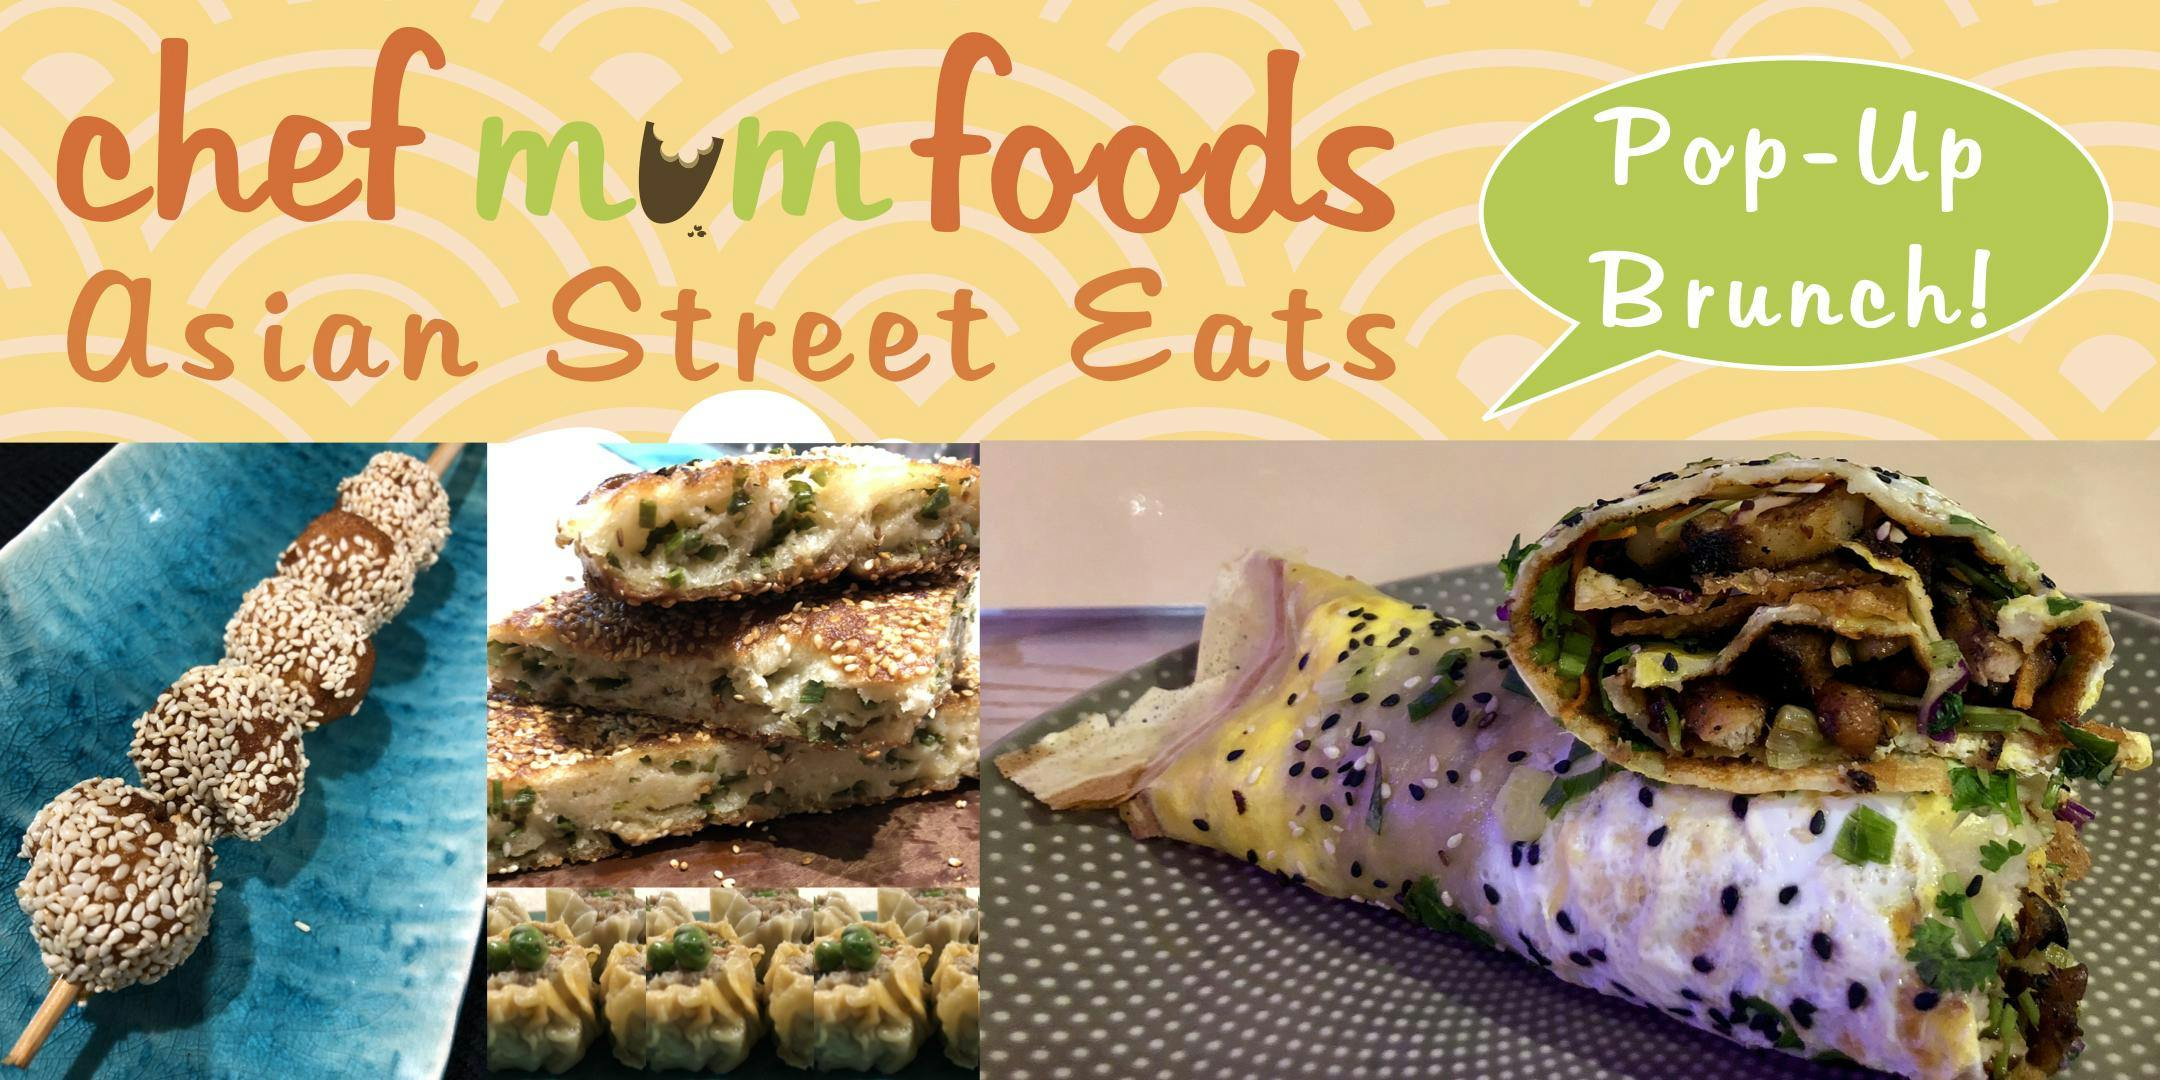 Asian Street Eats Pop-Up Brunch by Chef Mum Foods